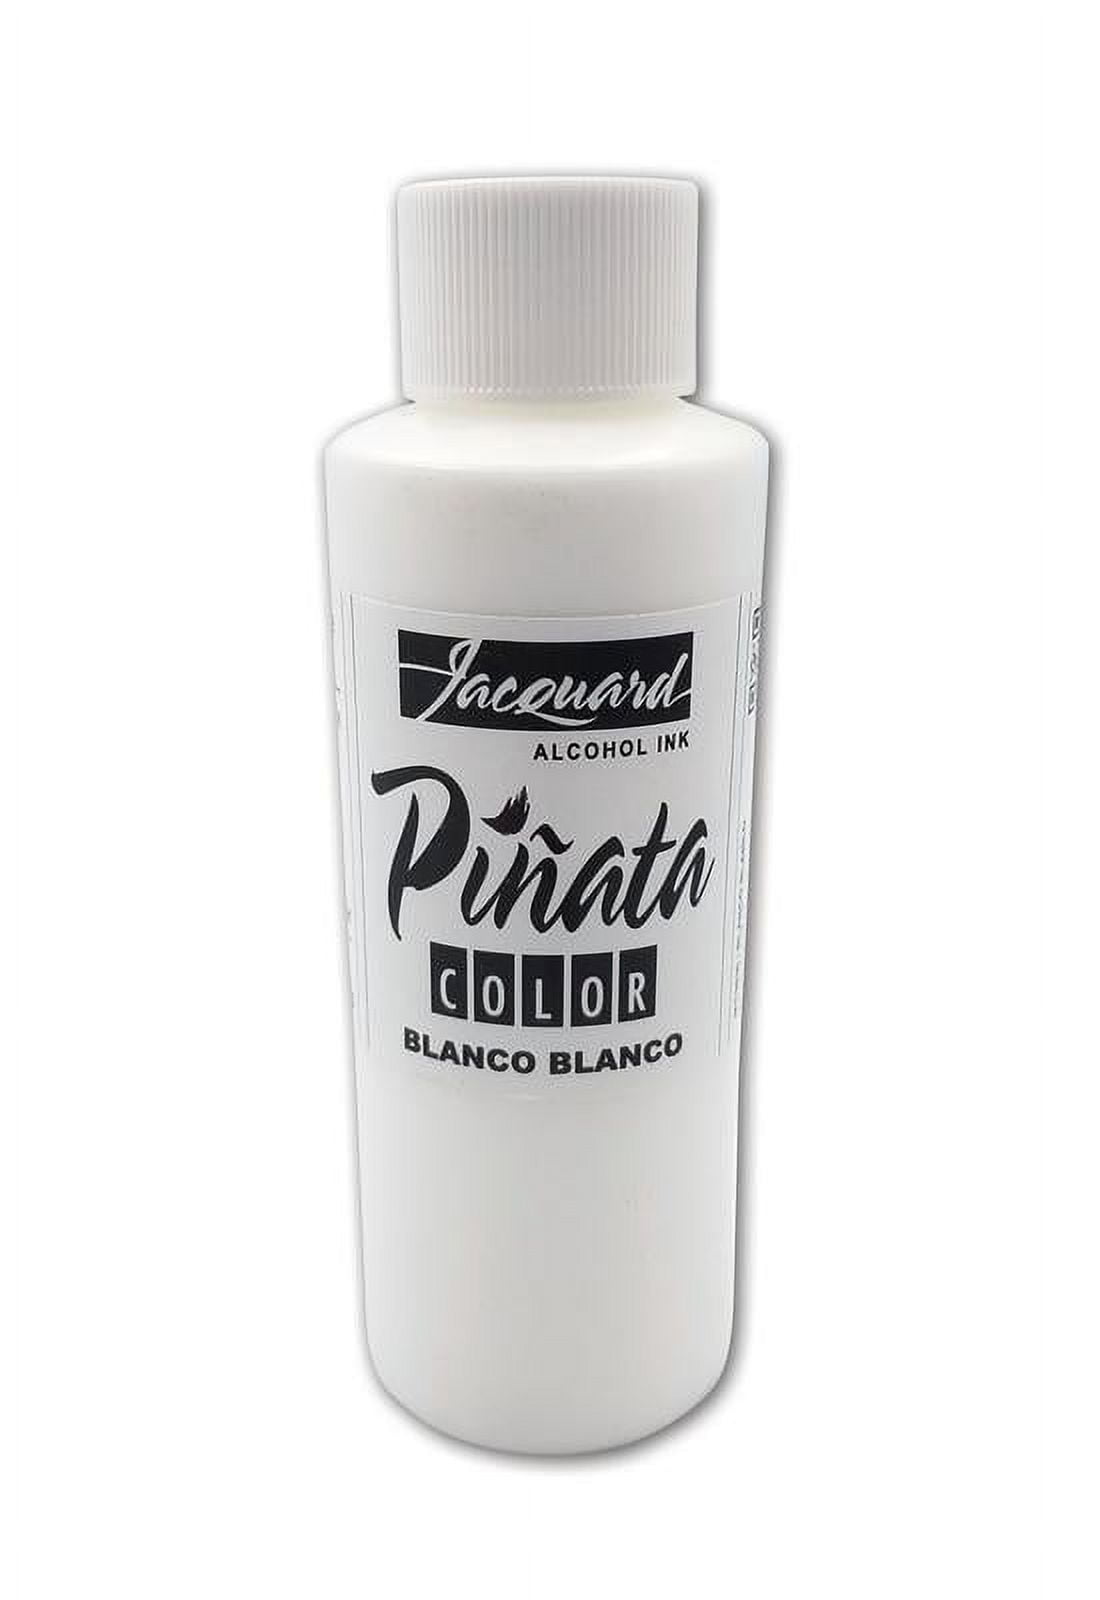 Jacquard Pinata Blanco White and Mantilla Black Alcohol Ink Colors (4- —  Grand River Art Supply